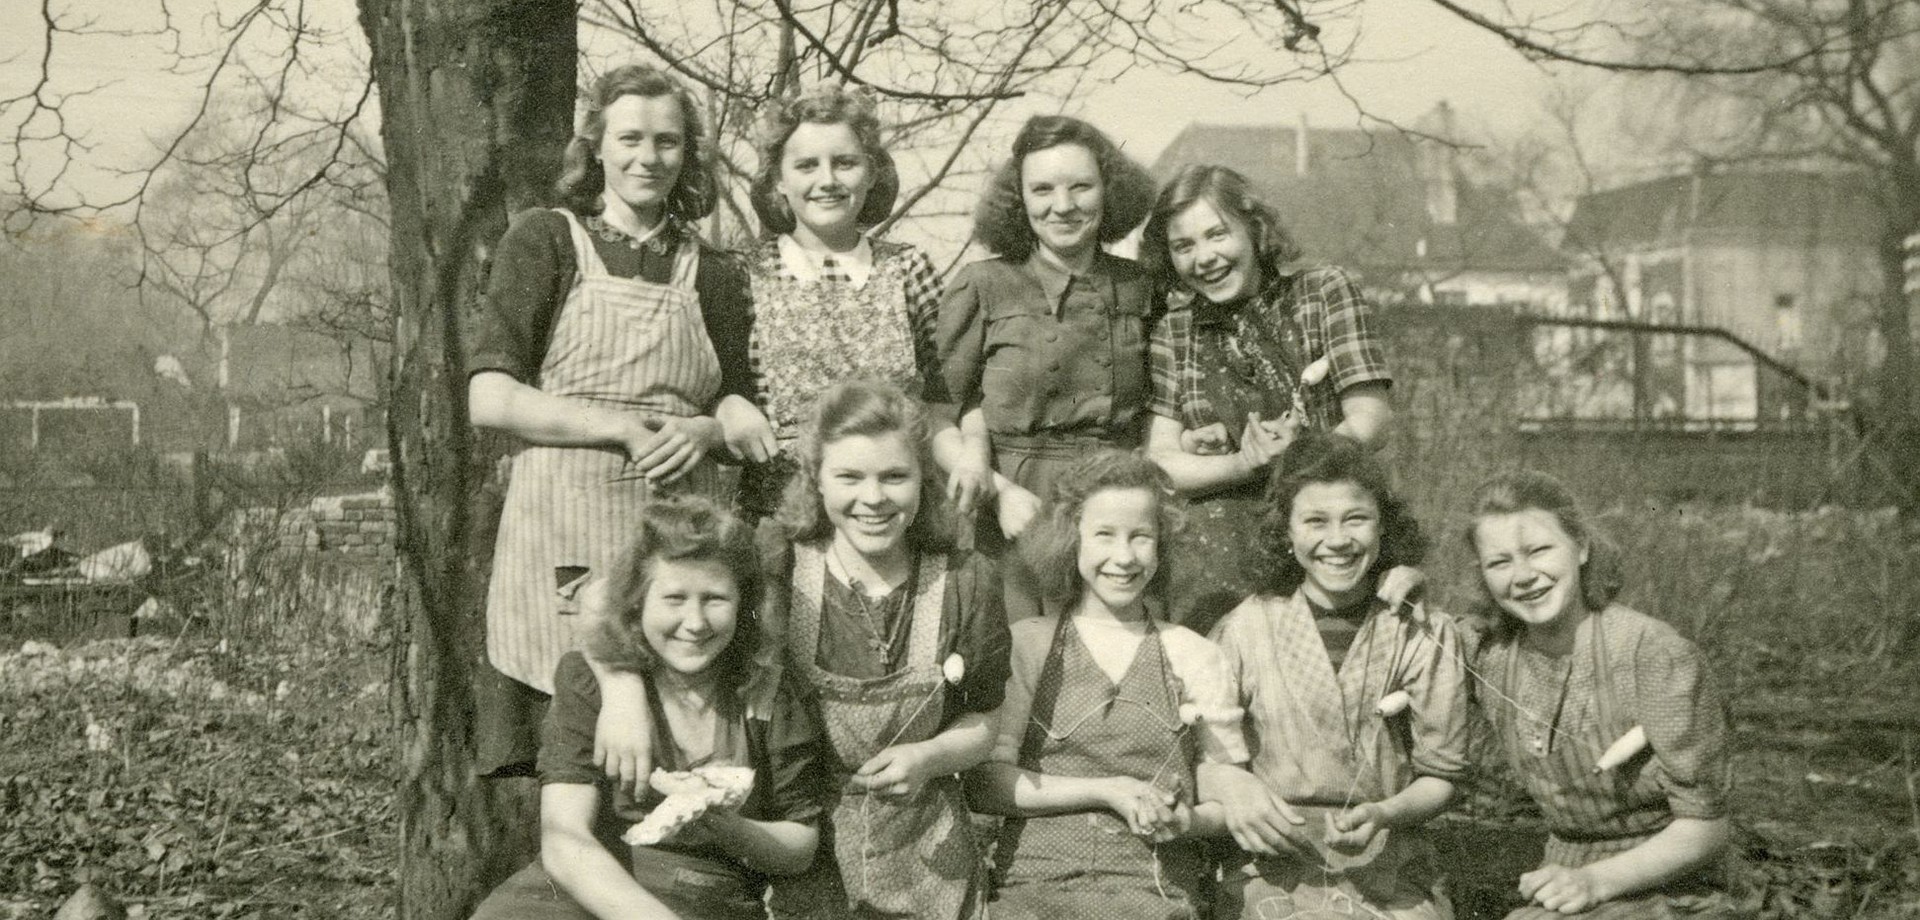 Schwarz-Weiß Aufnahme mit 9 Mitarbeiterinnen der Spinnerei Herding. Im Hintergrund sind Bäume und Gebäude zu sehen.